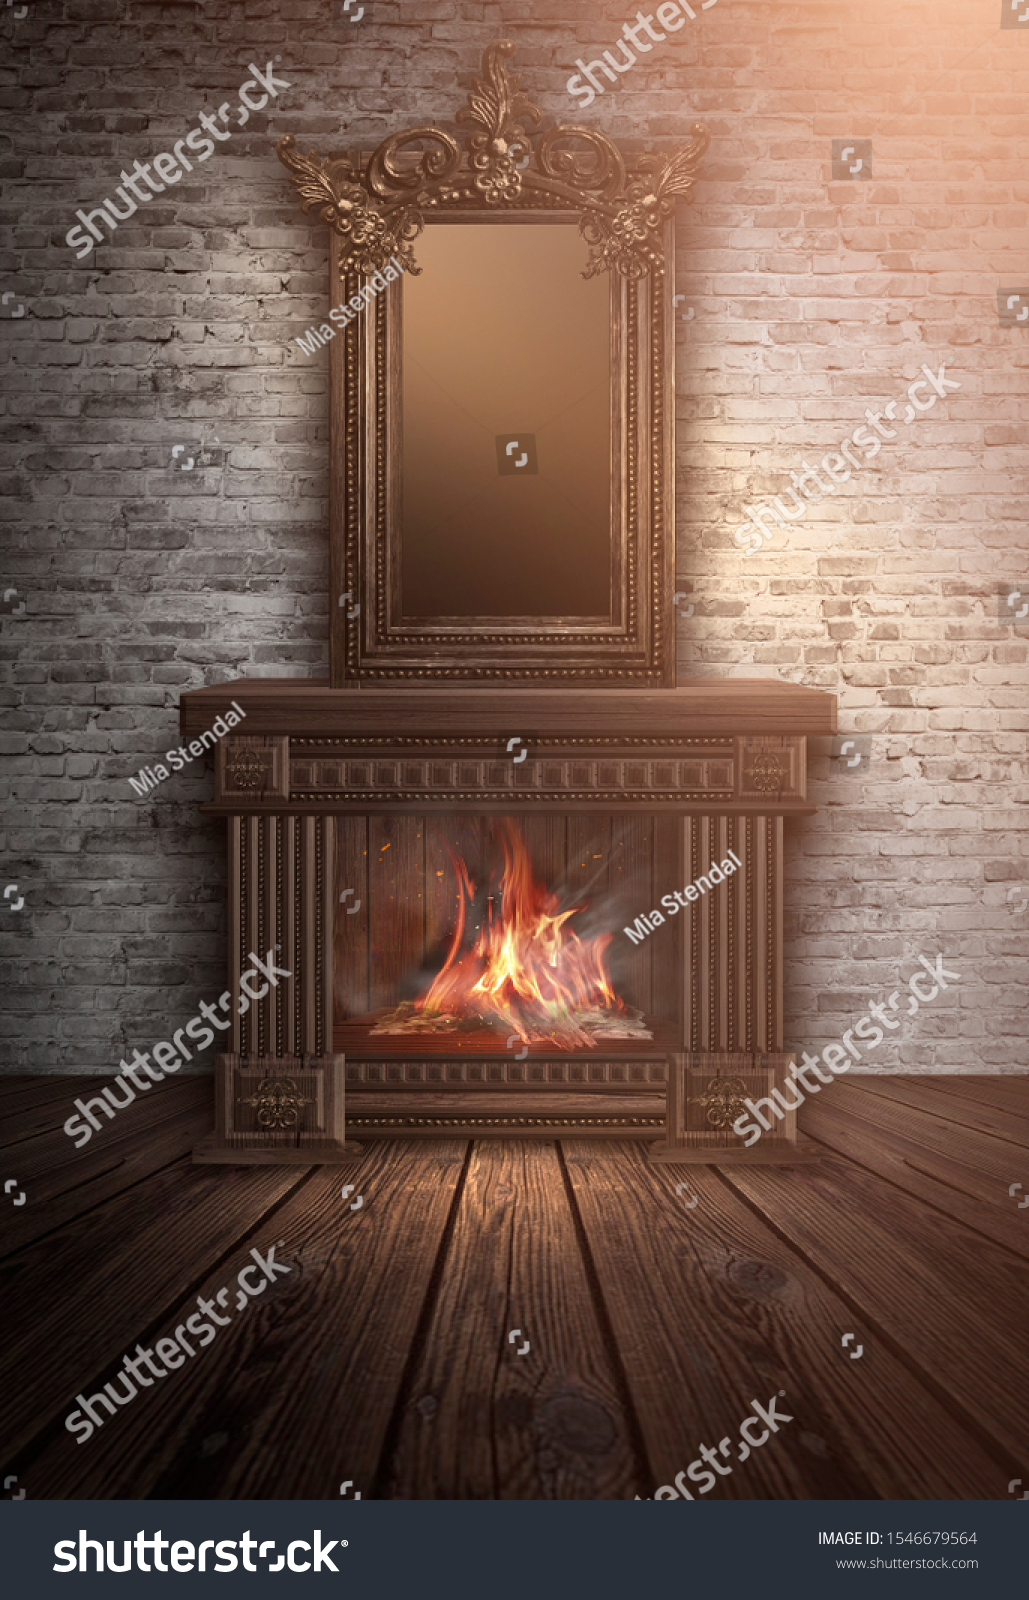 3dイラスト ビンテージ ナイト ルームの典型的な暖炉 ロマティック背景または壁紙 のイラスト素材